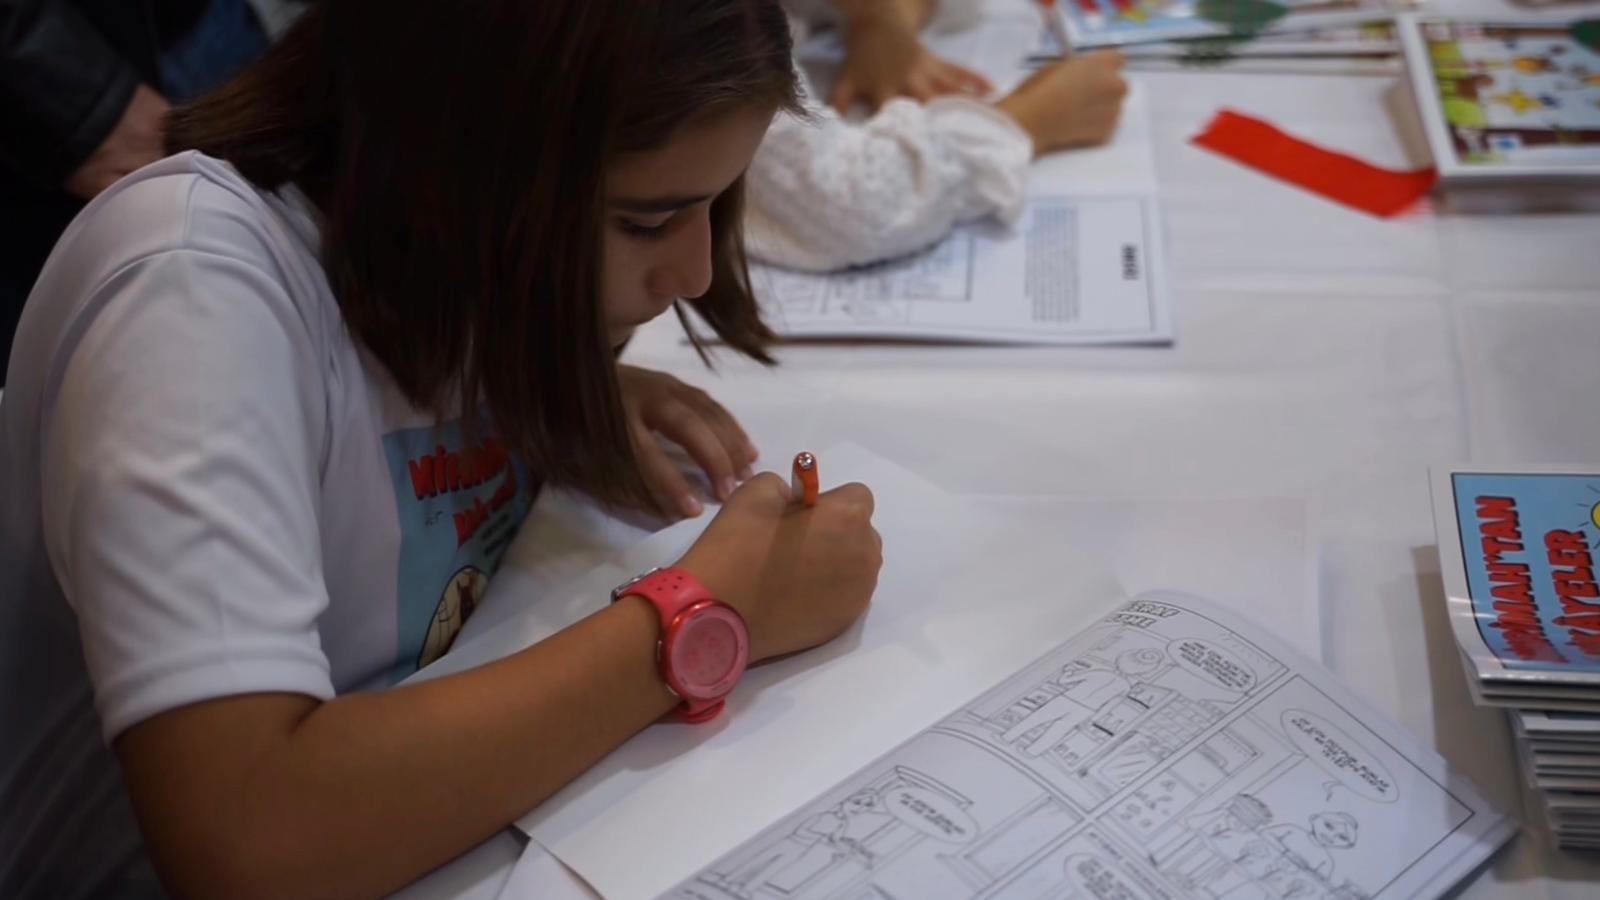 Tuzla Belediyesi Çizgi Roman Okulu, çocukların hayal gücünü sergiye taşıdı